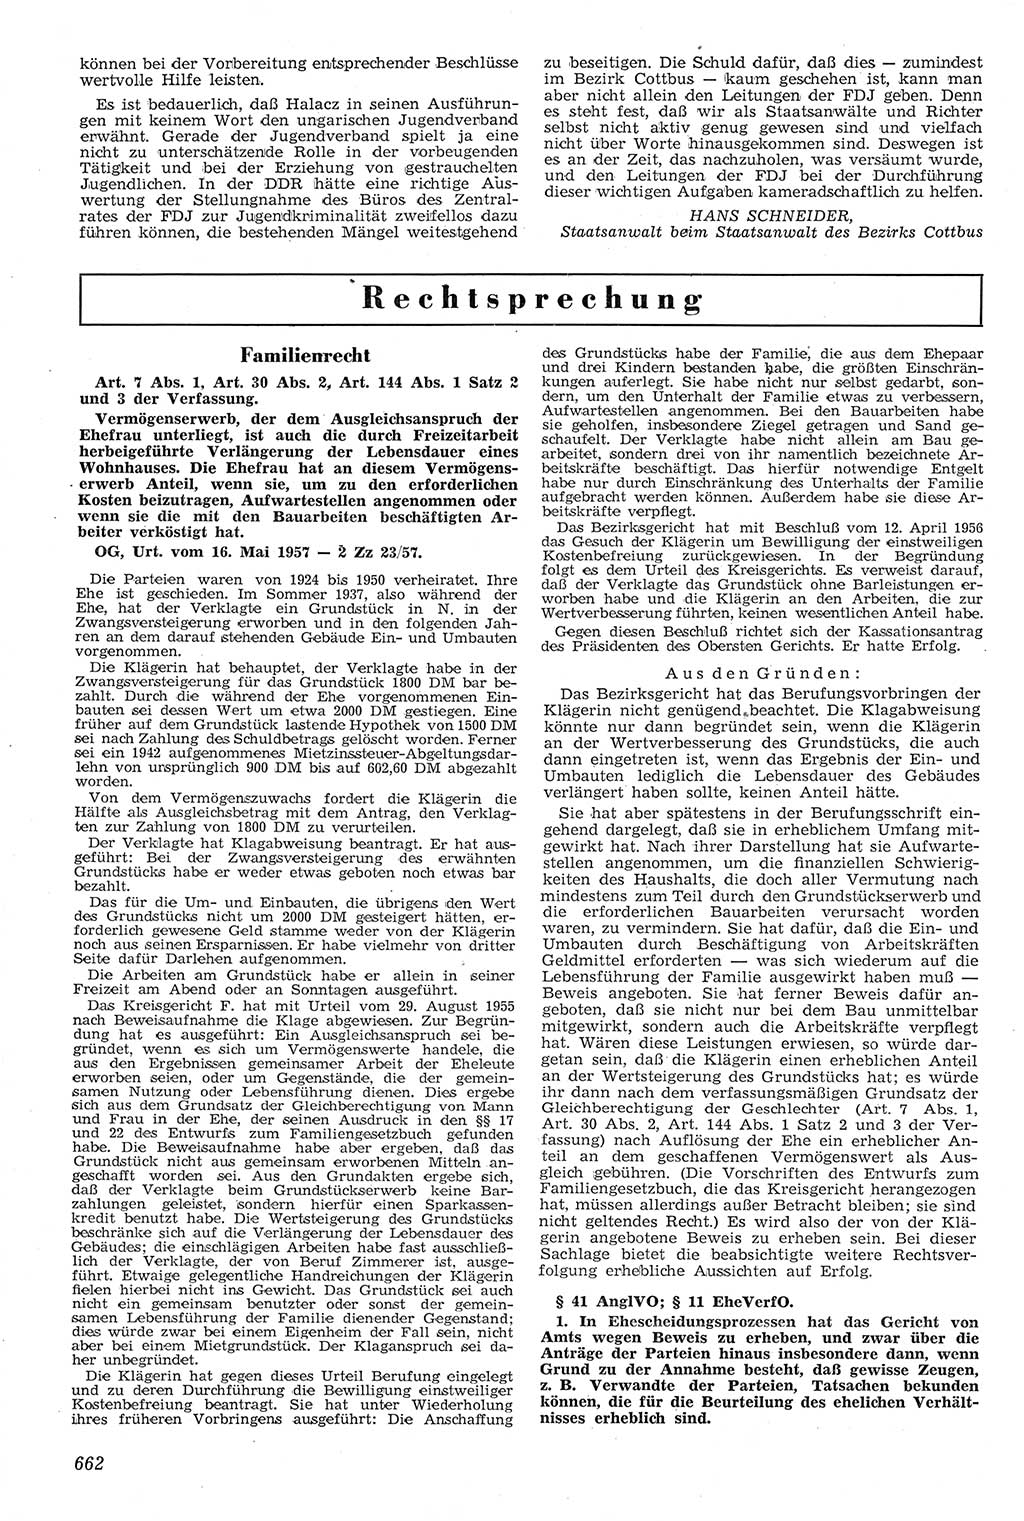 Neue Justiz (NJ), Zeitschrift für Recht und Rechtswissenschaft [Deutsche Demokratische Republik (DDR)], 11. Jahrgang 1957, Seite 662 (NJ DDR 1957, S. 662)